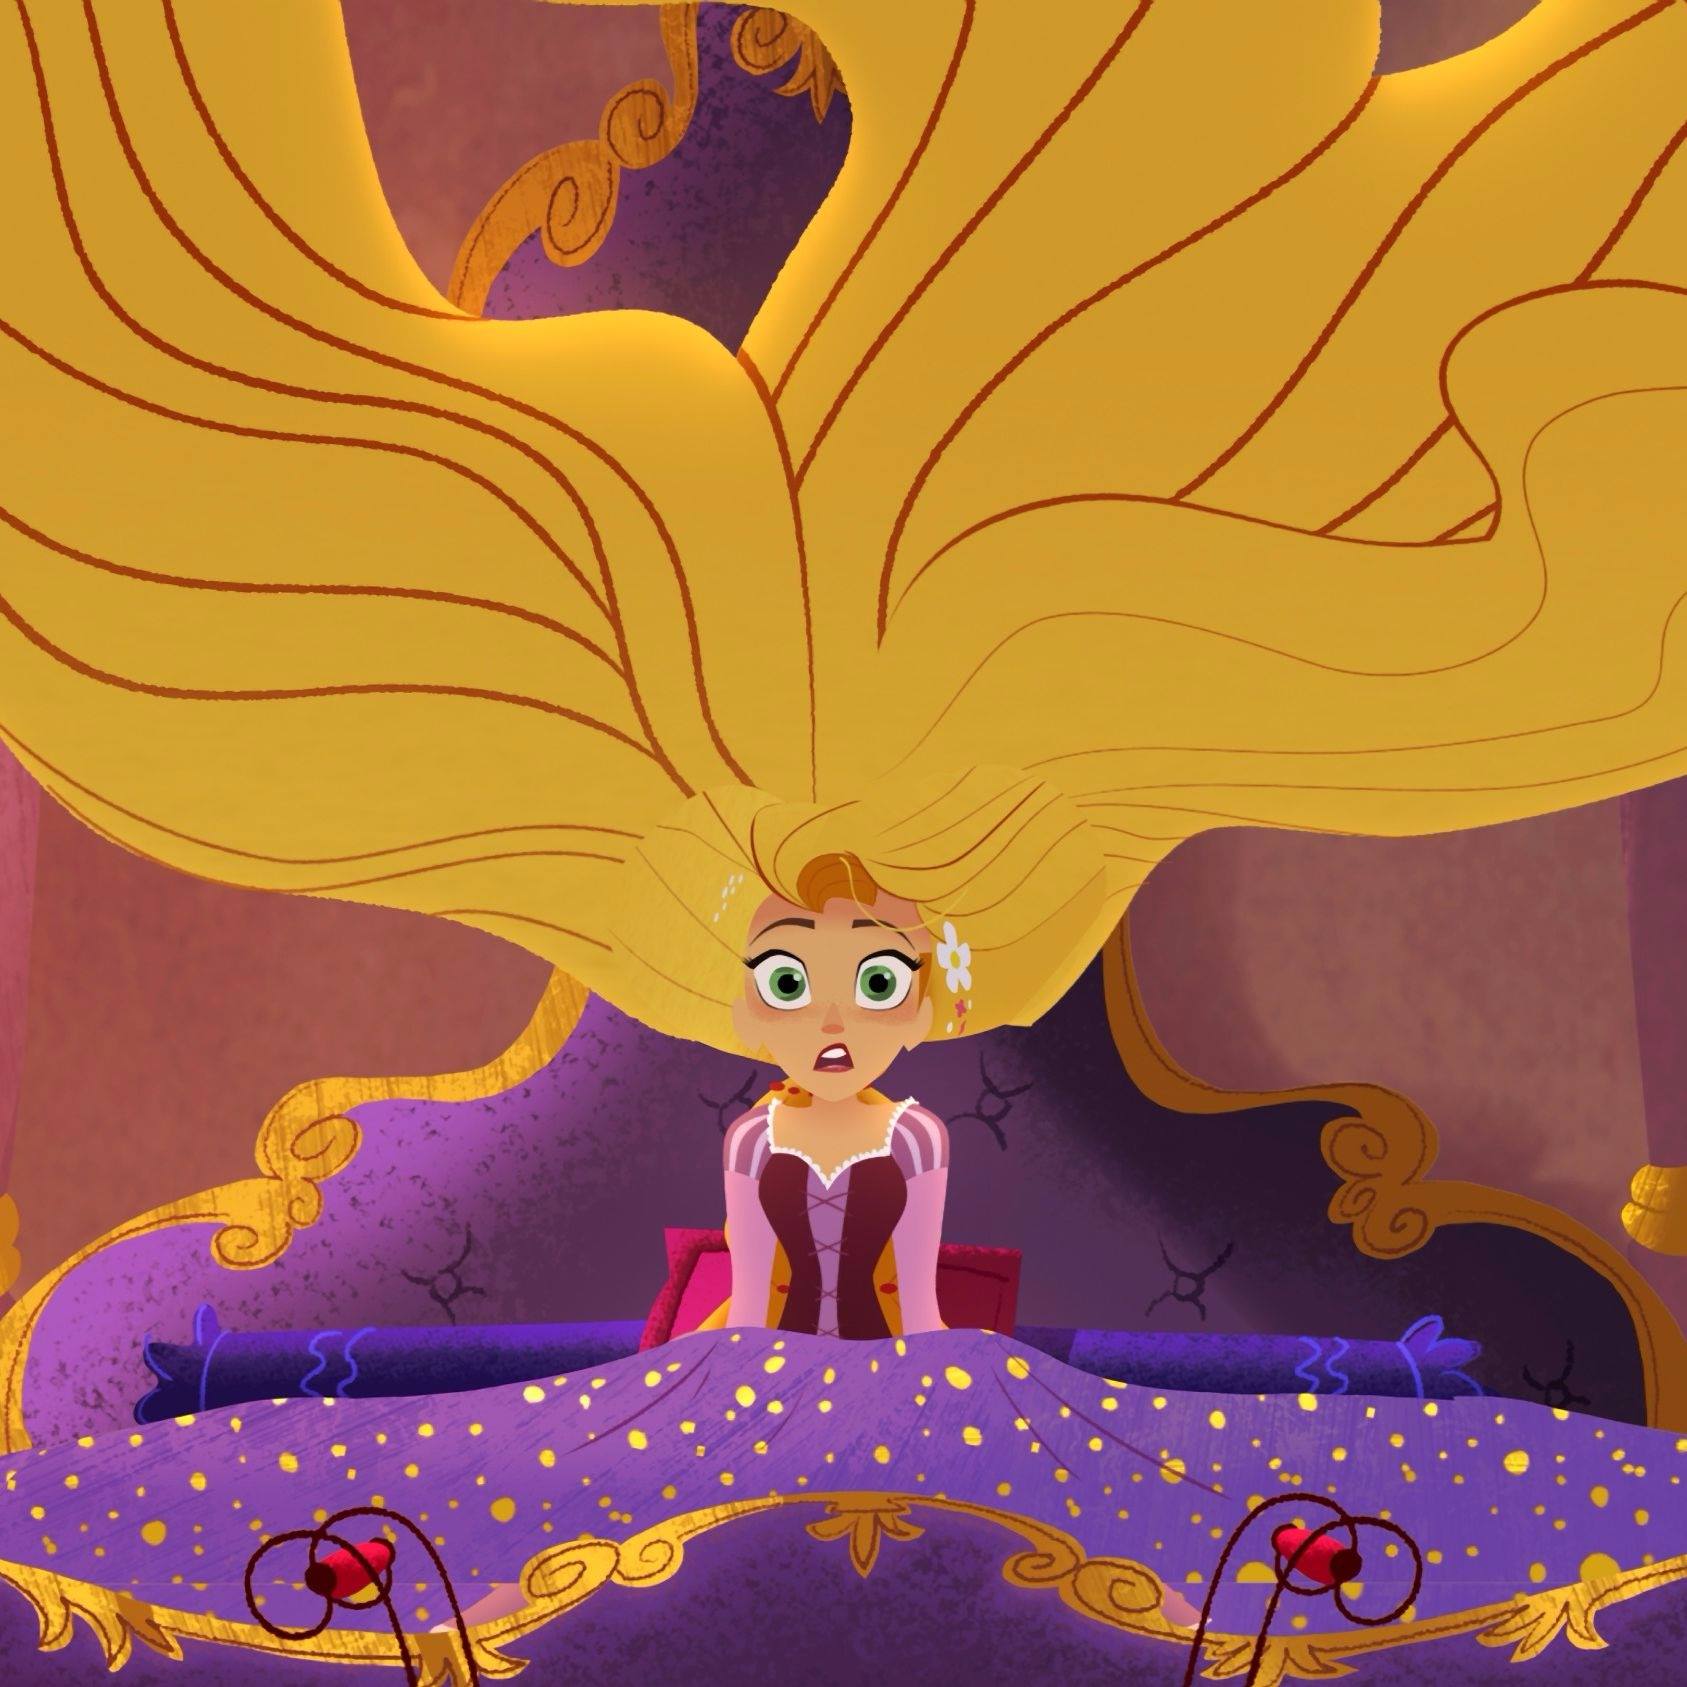 La nuova Rapunzel dice no al matrimonio per godersi la sua libertà